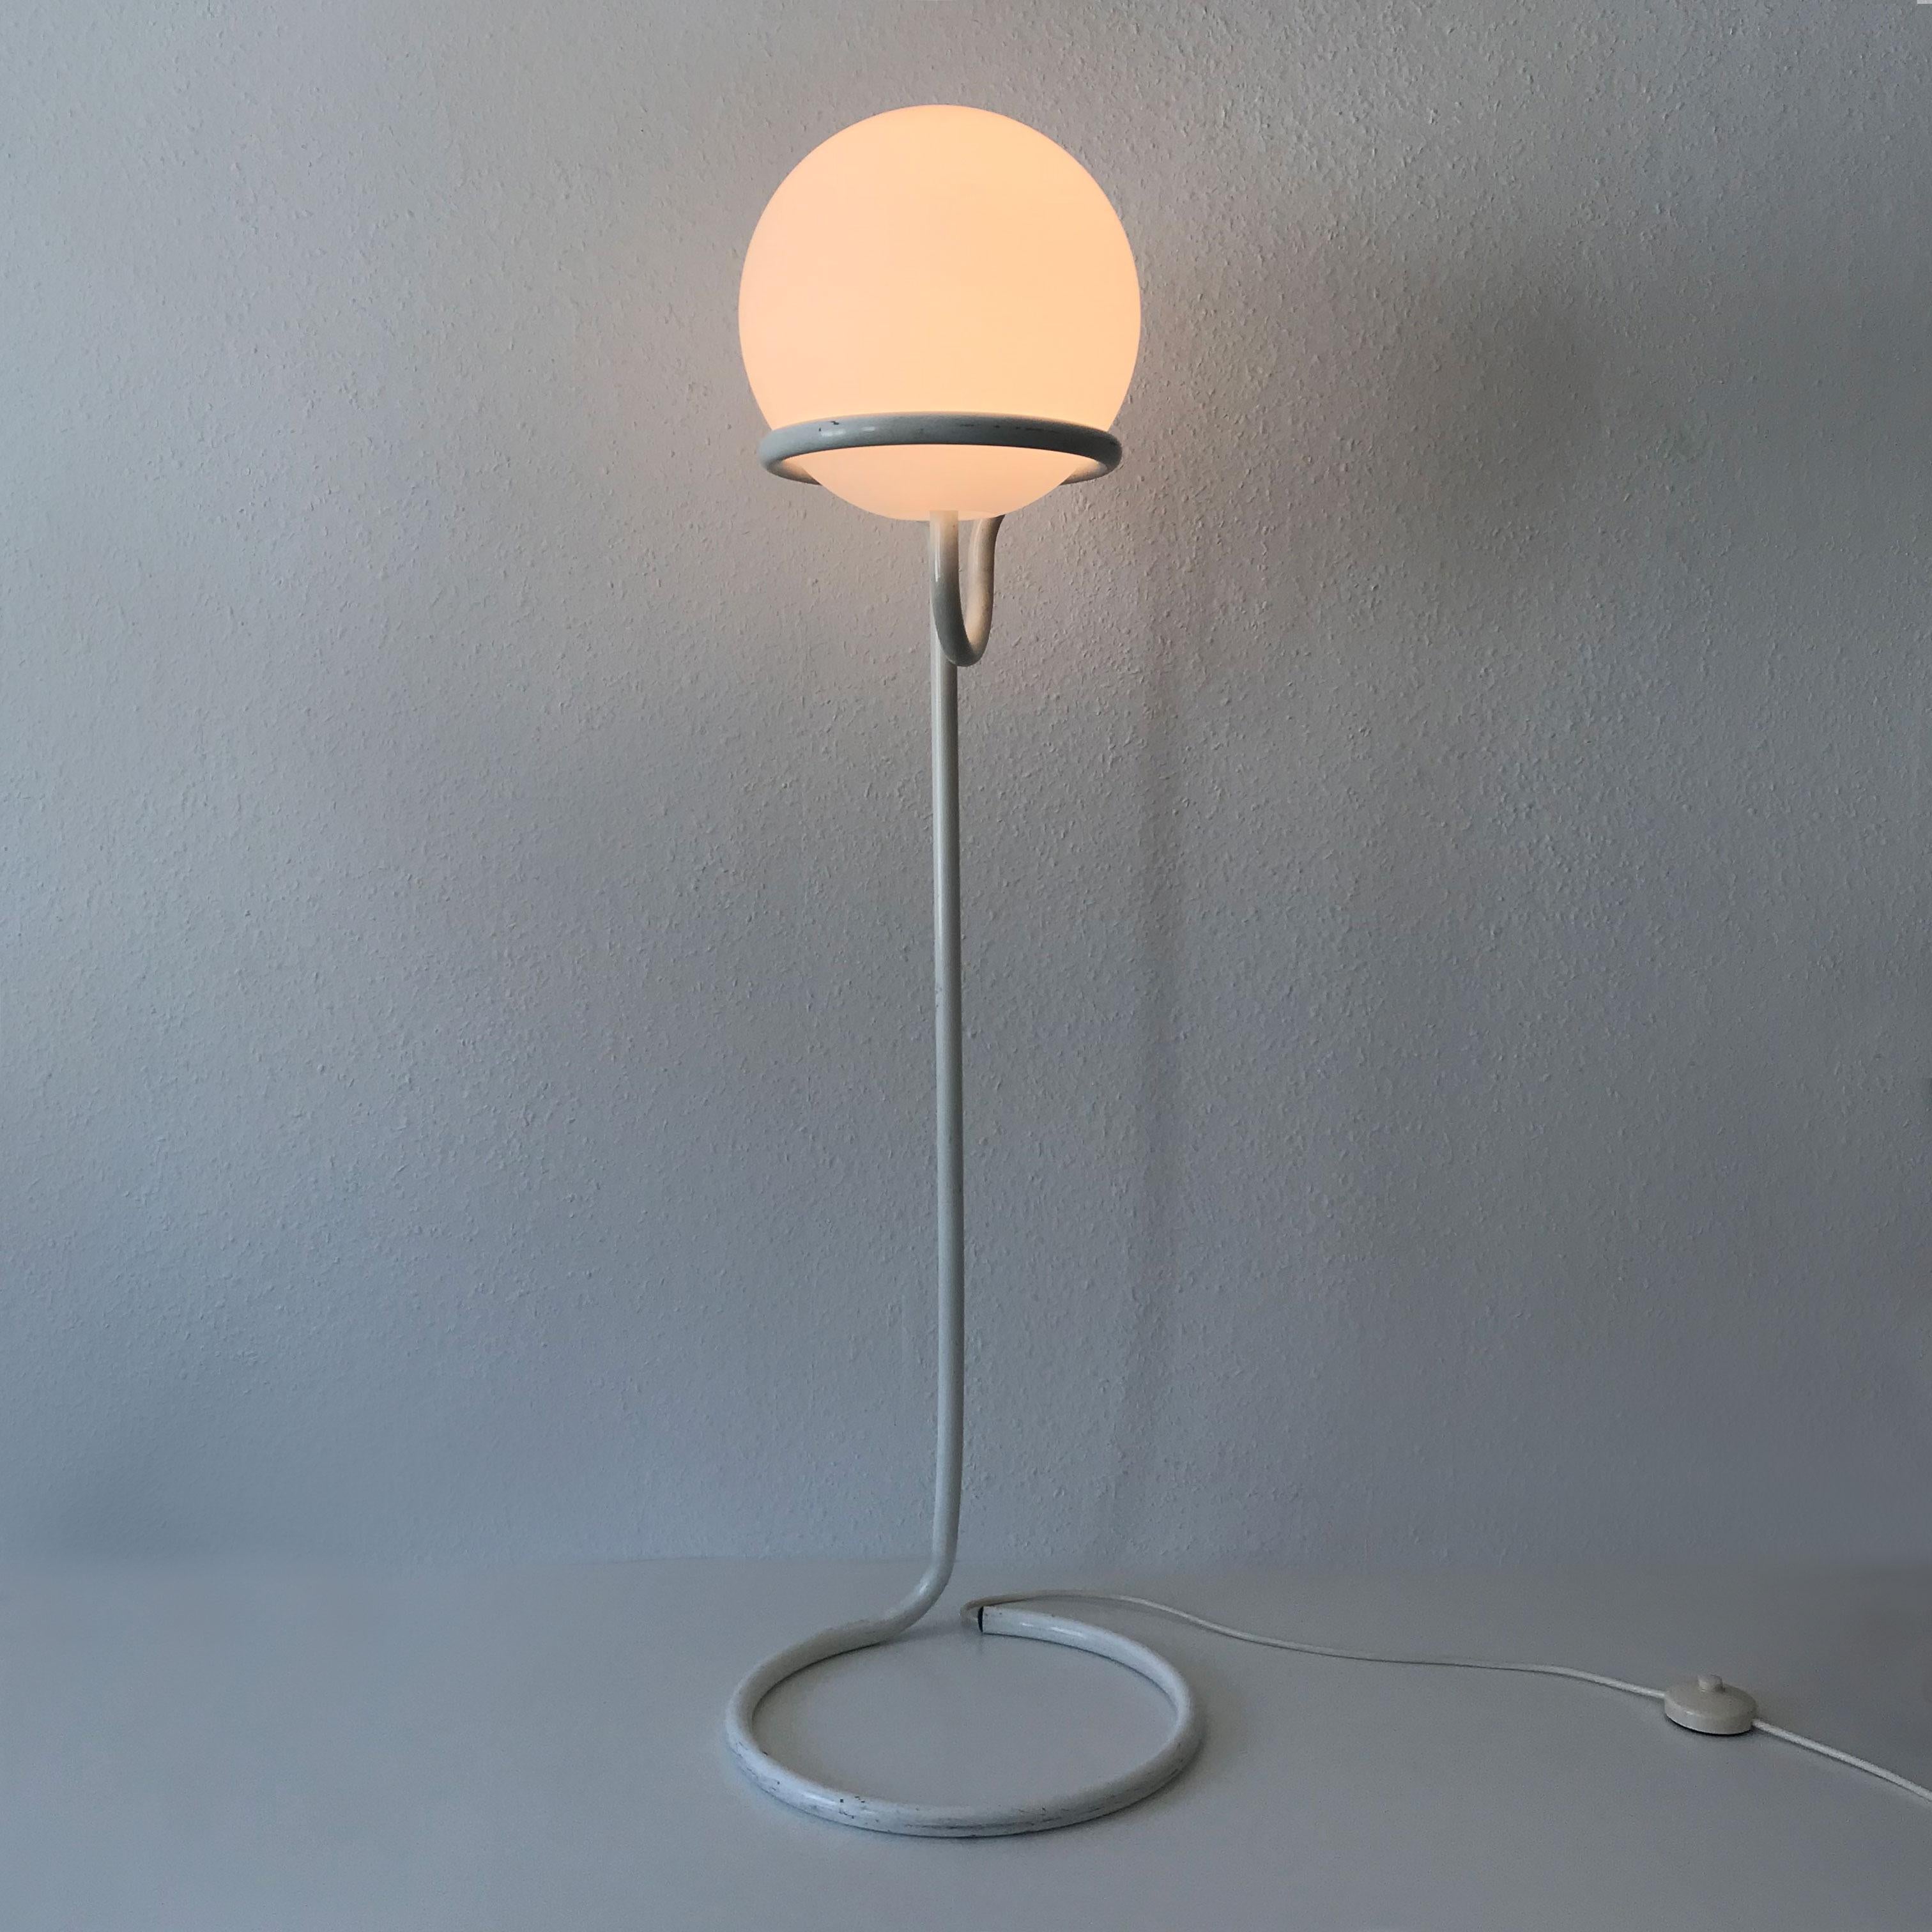 Floor Lamp Globe by Aldo Van Den Nieuwelaar for Domani Designs Amsterdam 1967 For Sale 4